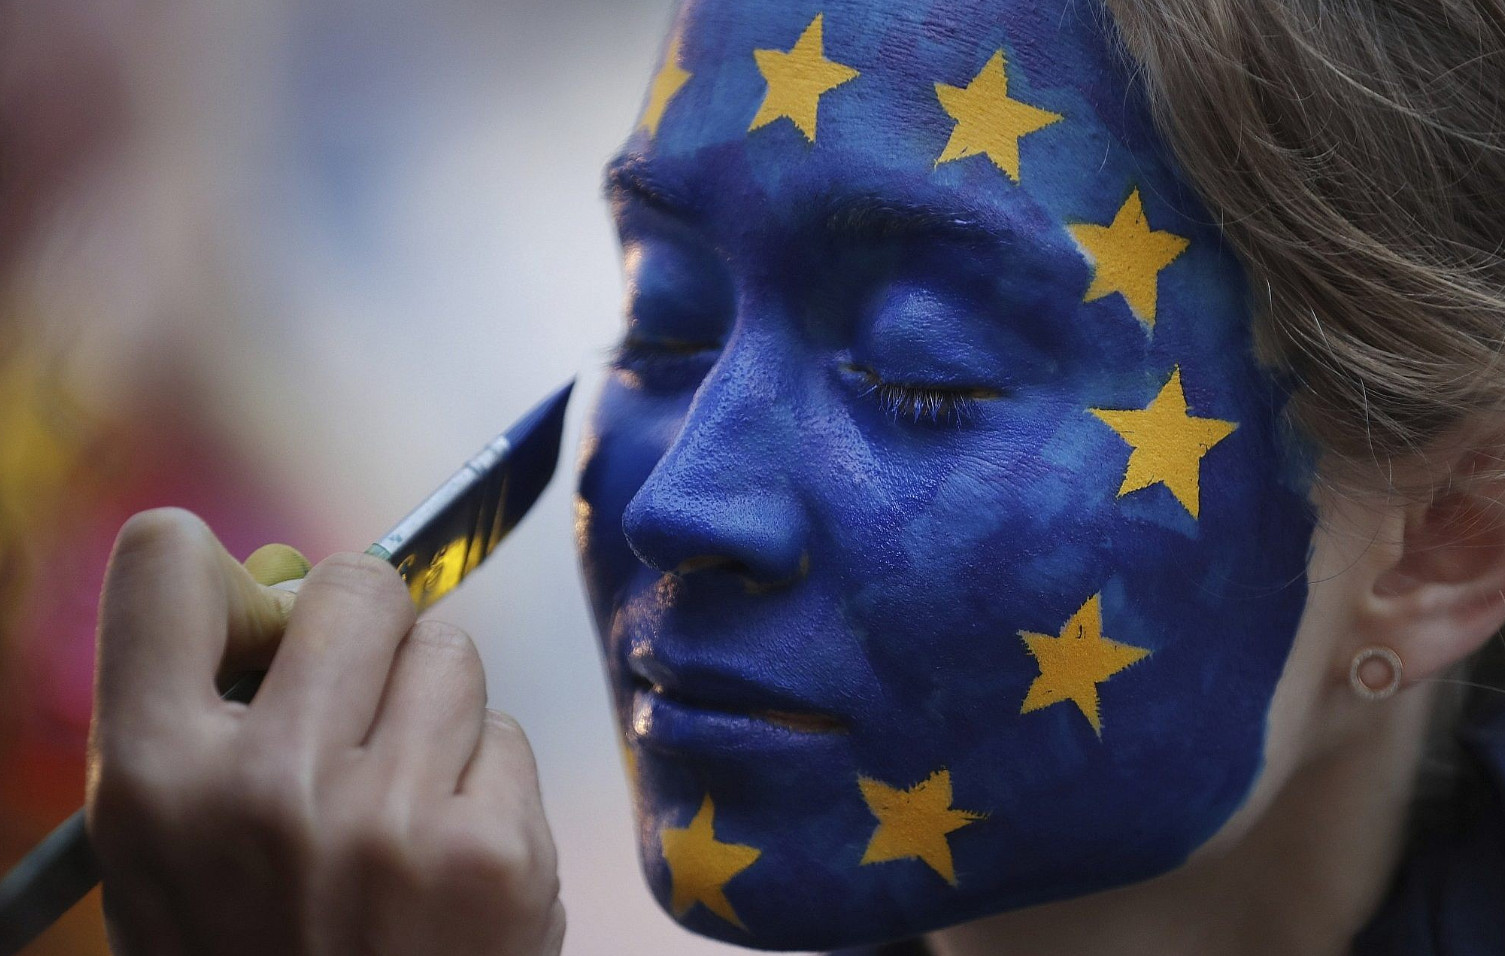 Κοιτάζοντας κατάματα το φάντασμα της ακροδεξιάς στην Ευρώπη